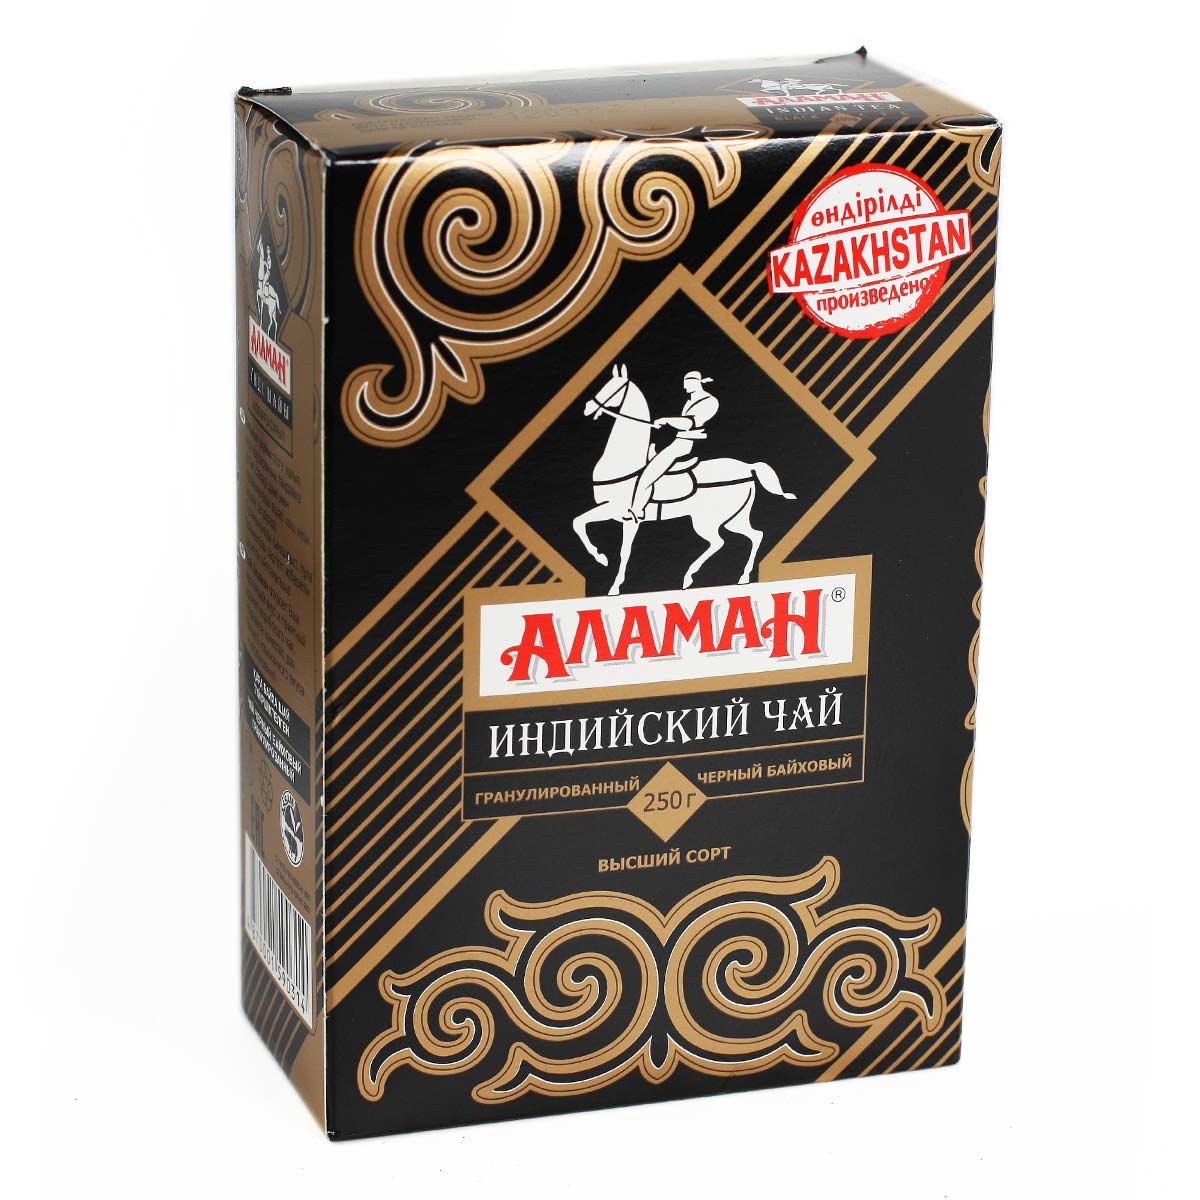 АЛАМАН Индийский гранулированный черный байховый чай 250г